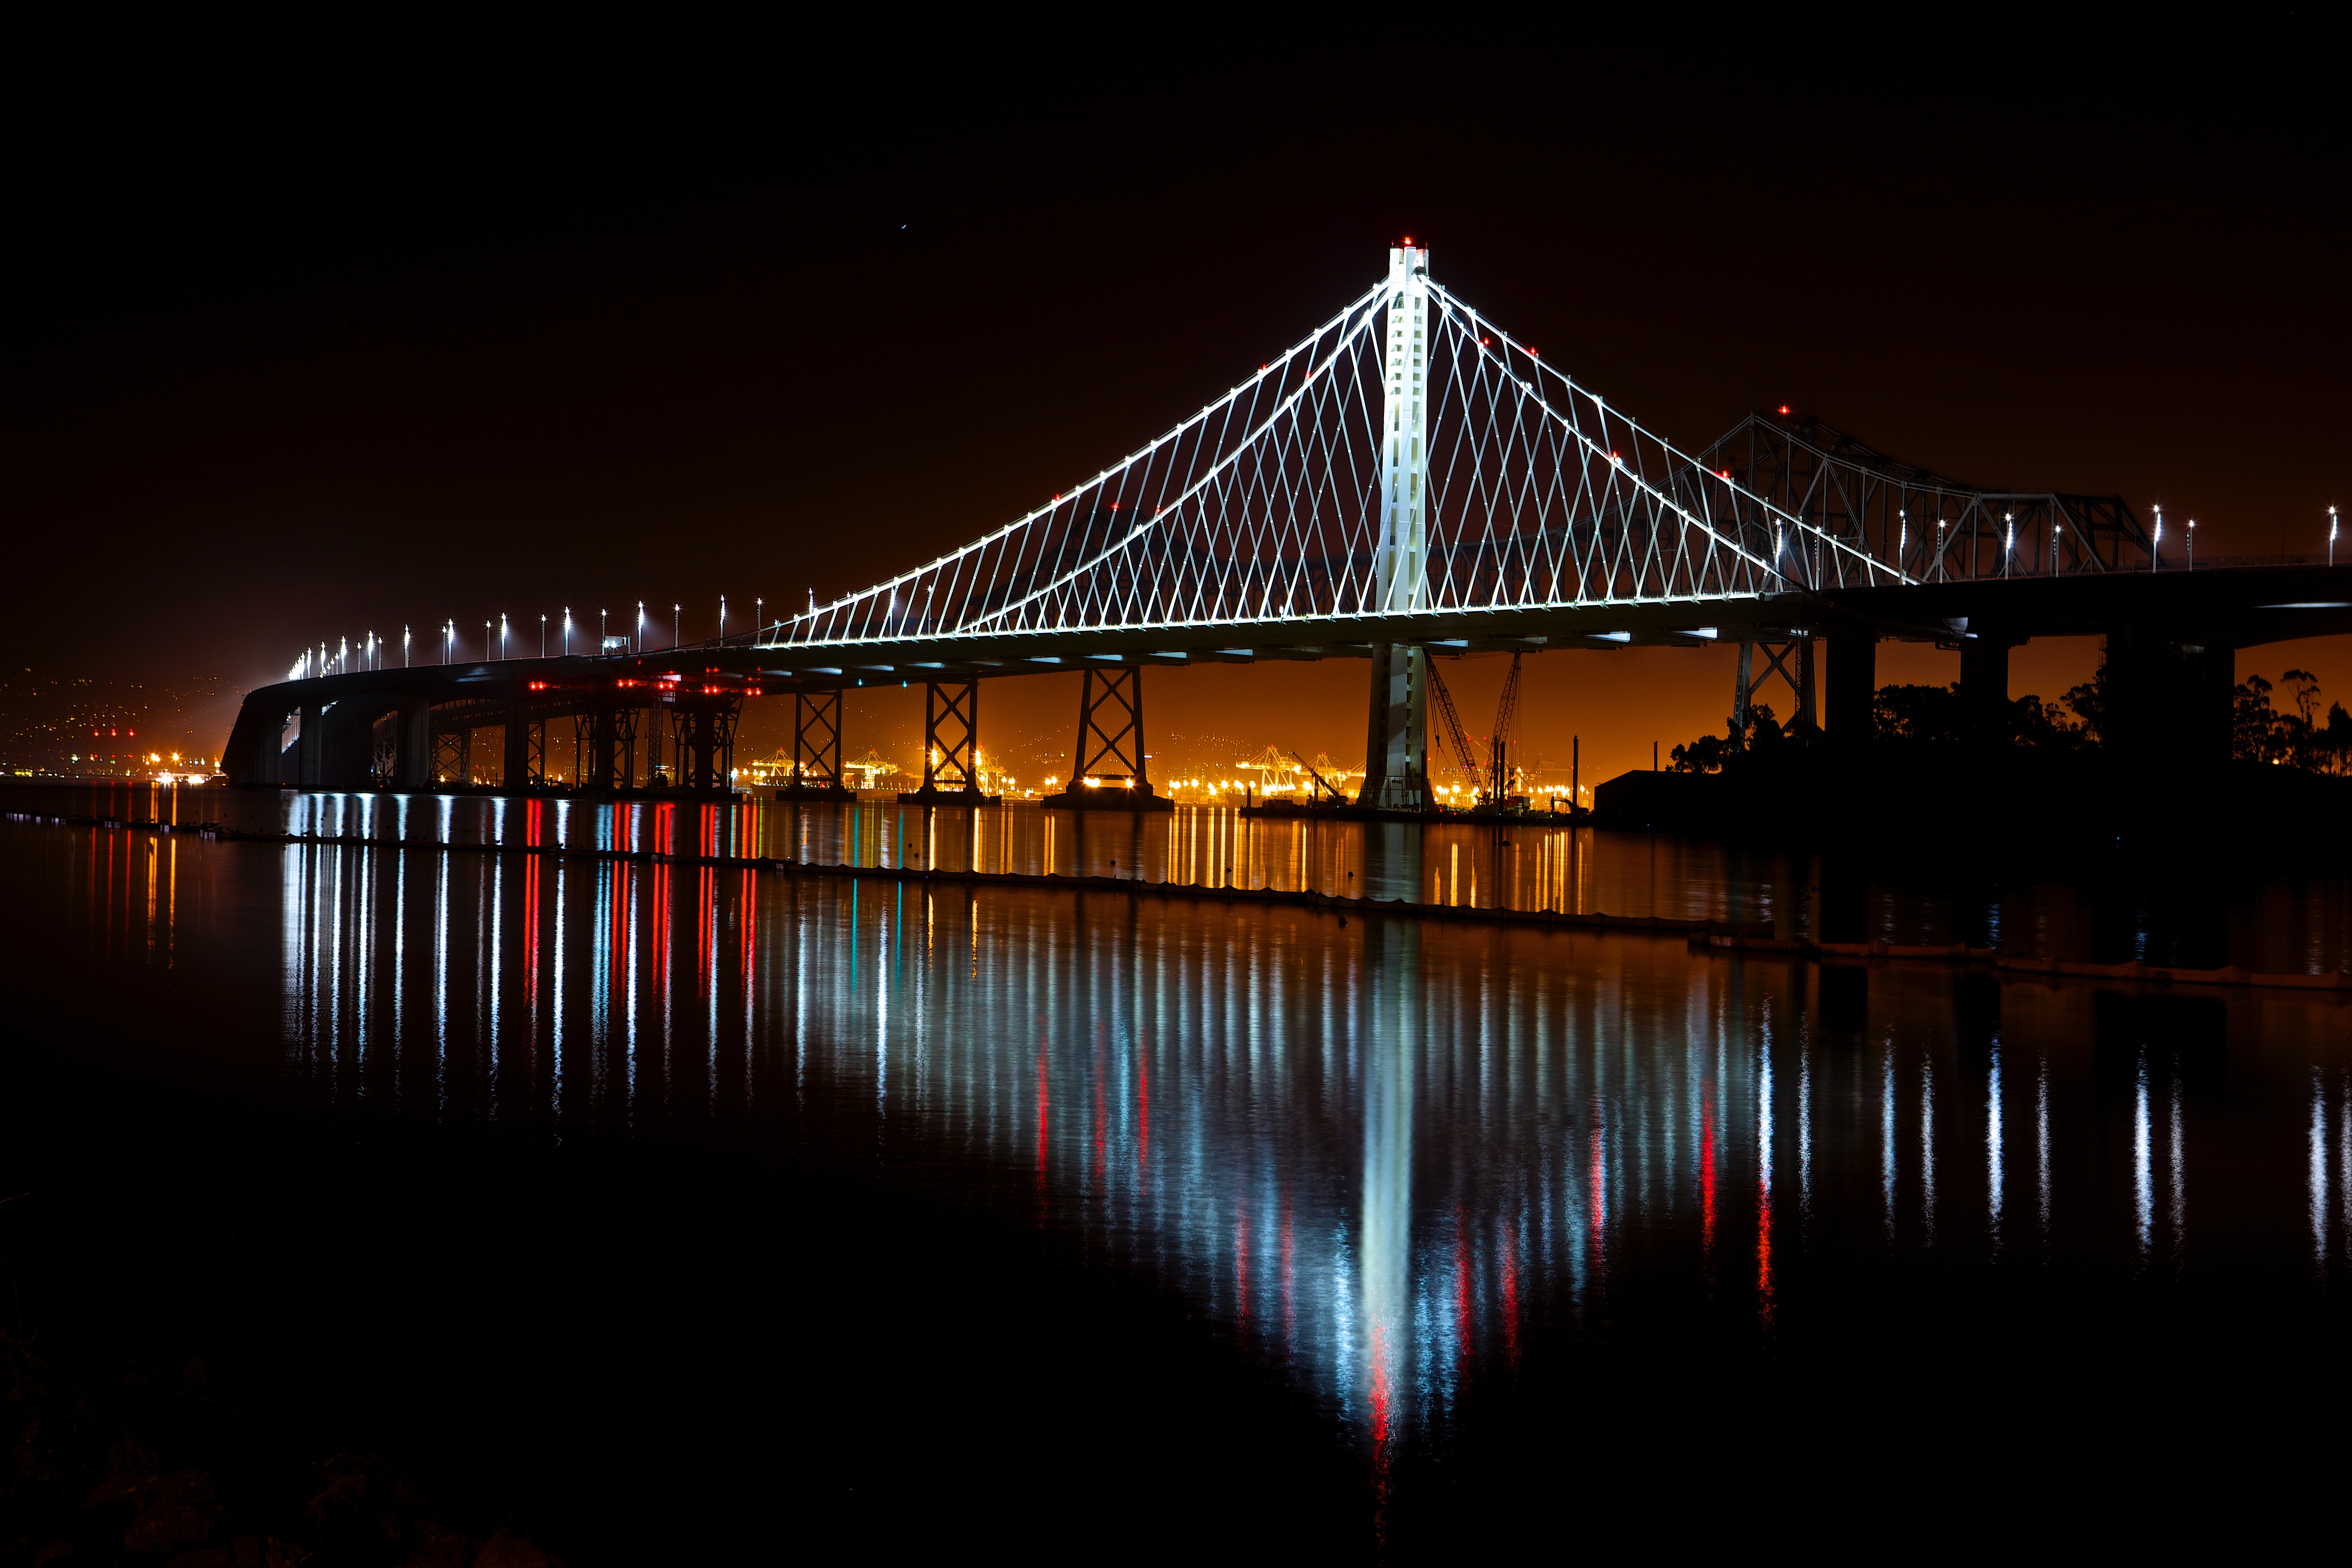 Illuminated suspension bridge against sky at night photo